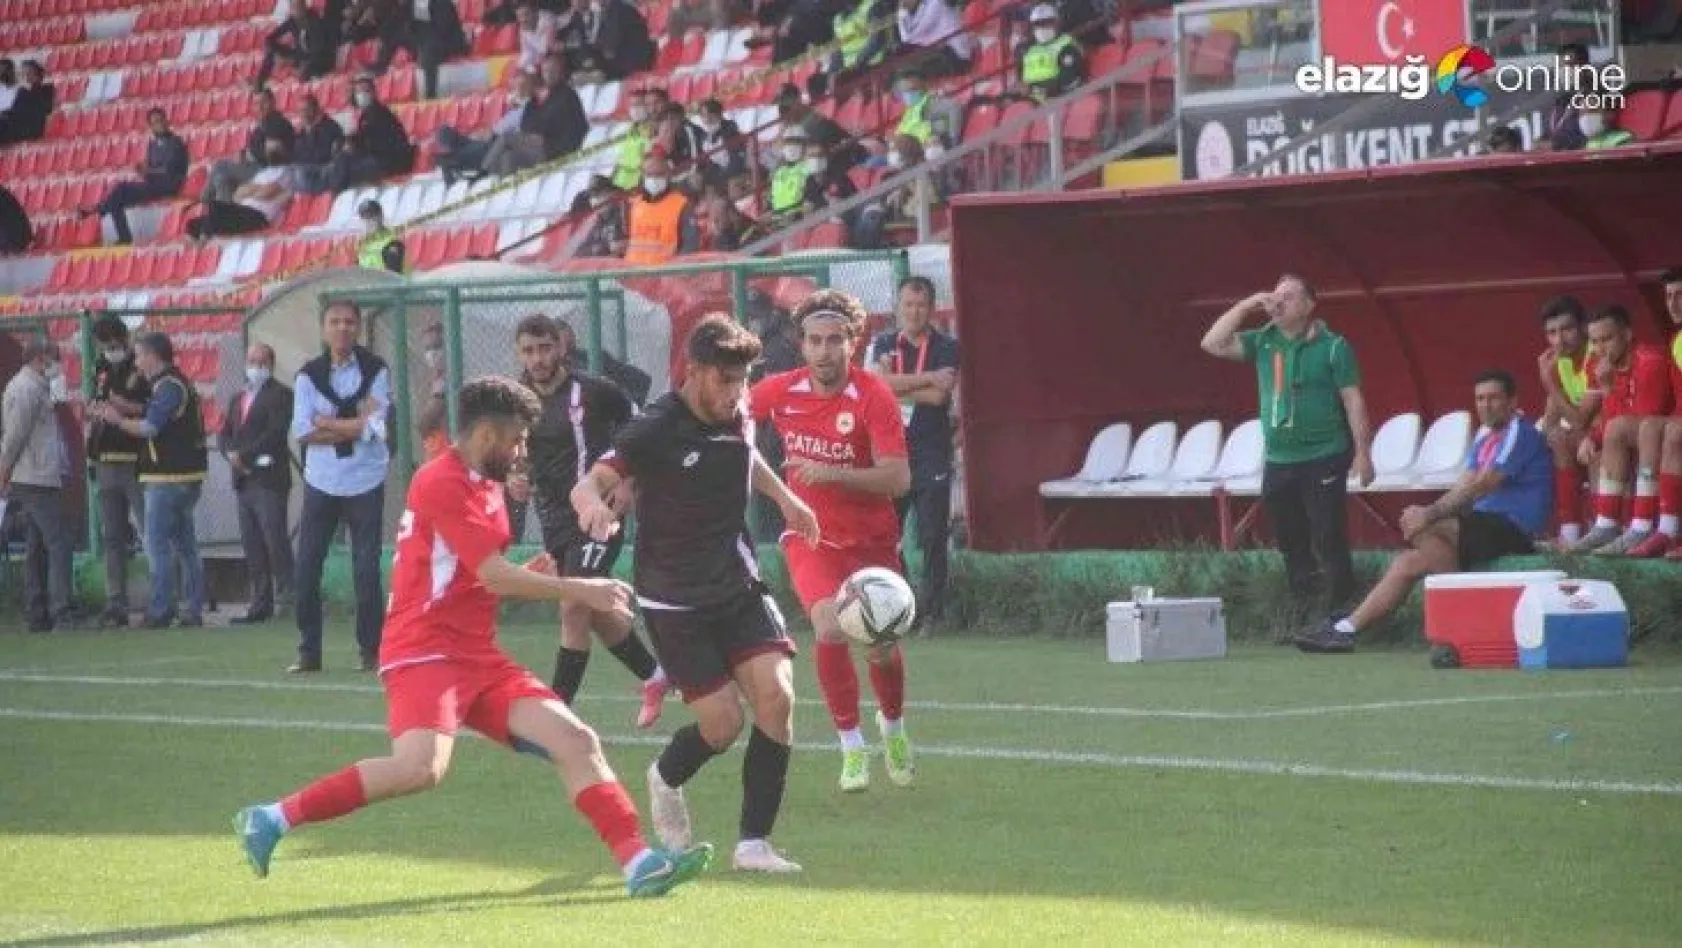 Elazığspor evinde karşılaştığı Çatalcaspor'u 4-3 mağlup etti